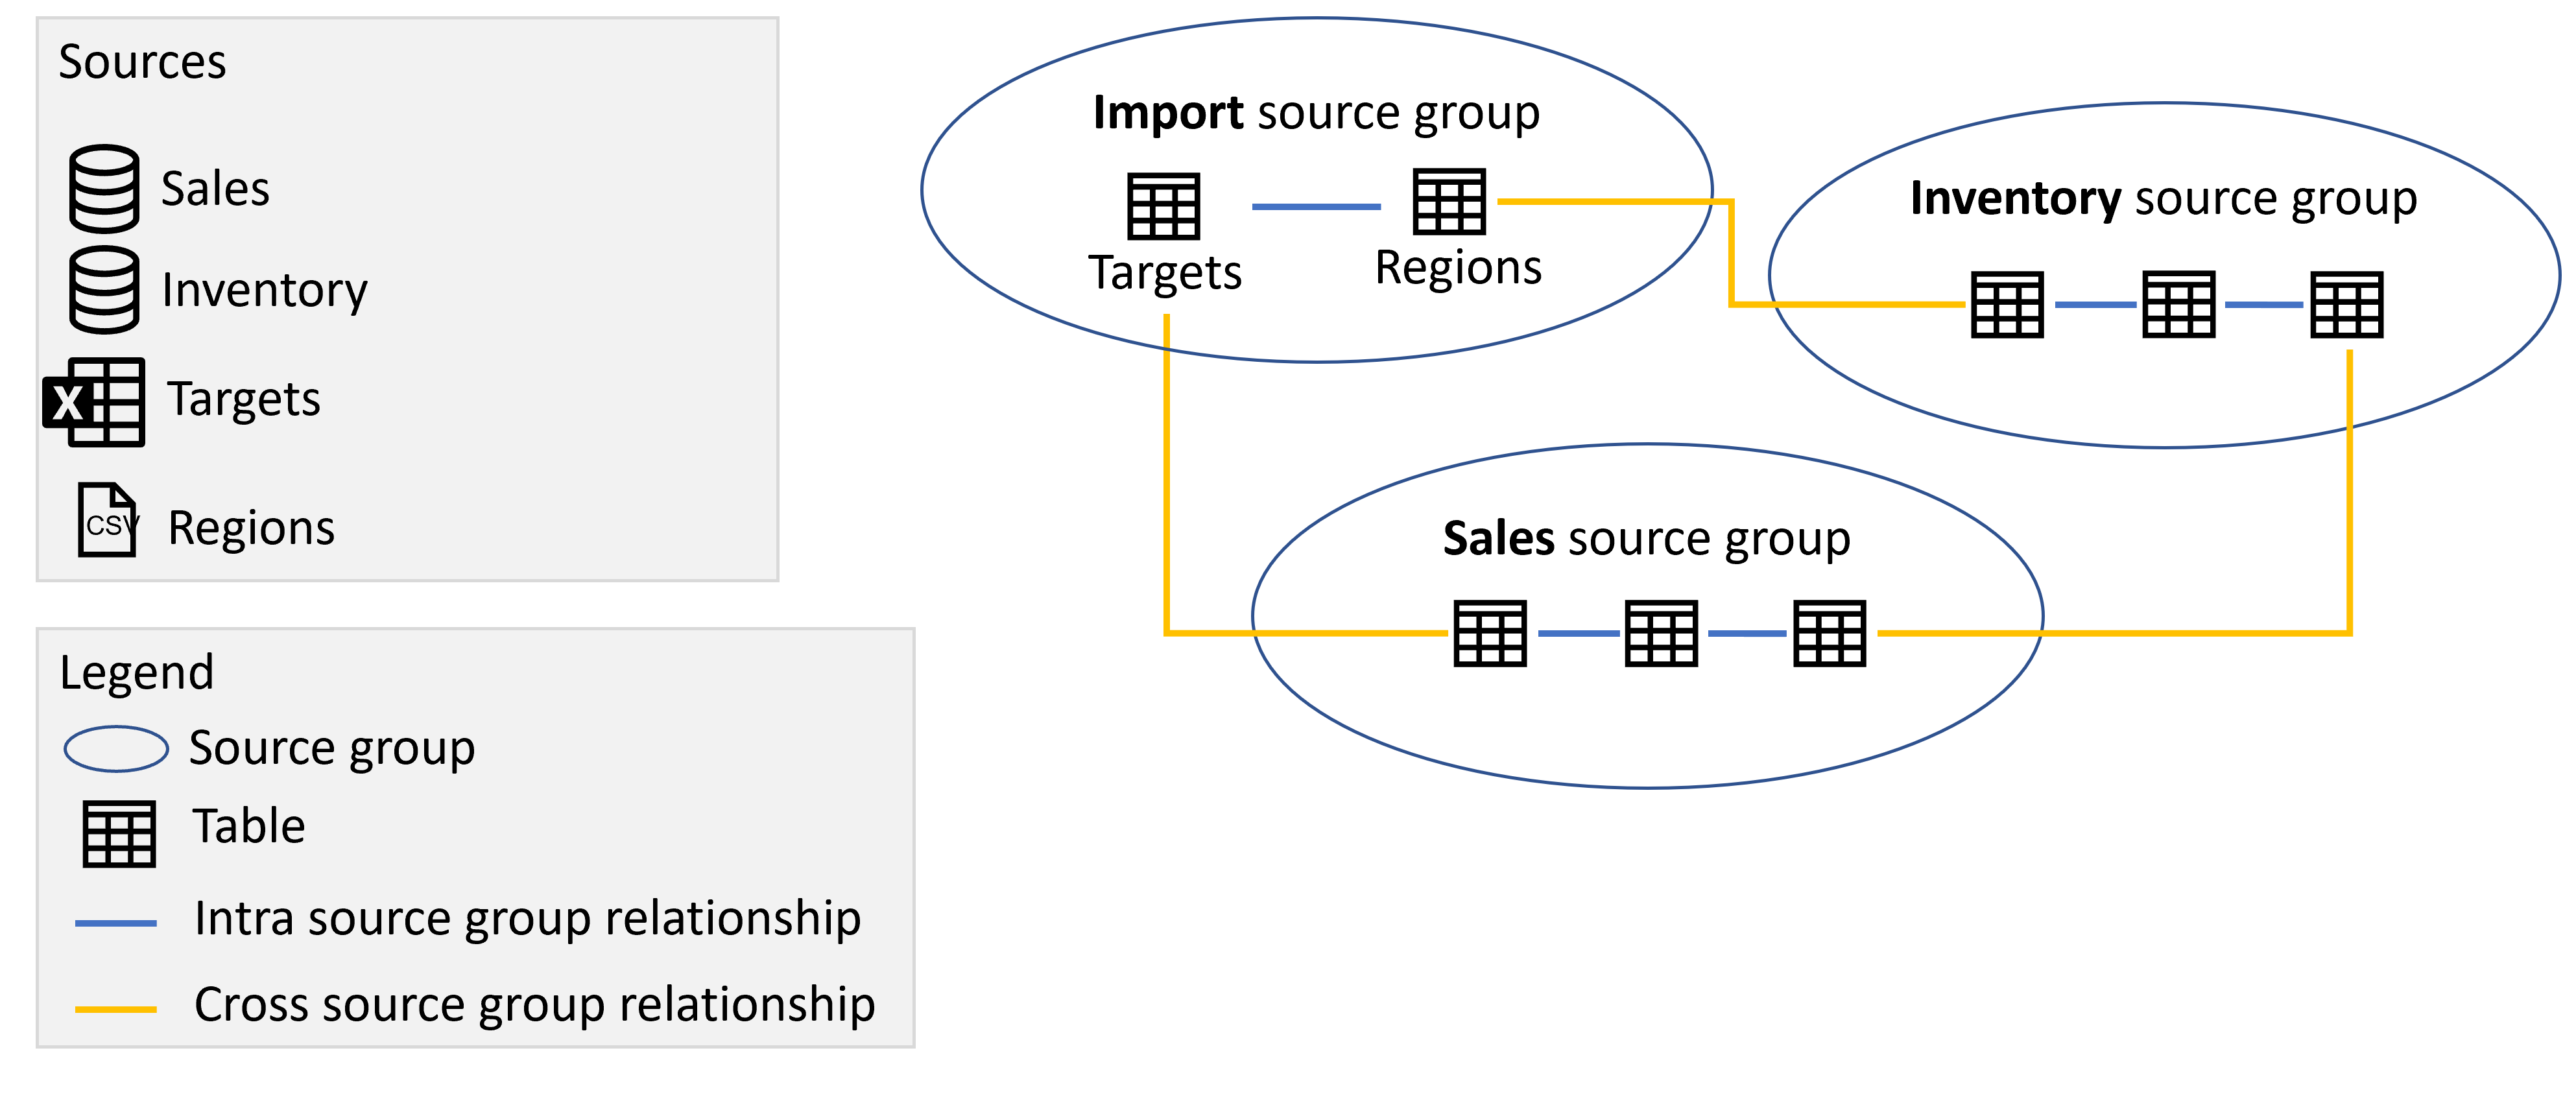 示意图显示了 Import、Sales 和 Inventory 源组（各组中包含来自对应源的表）以及如上所述的源组之间的关系。